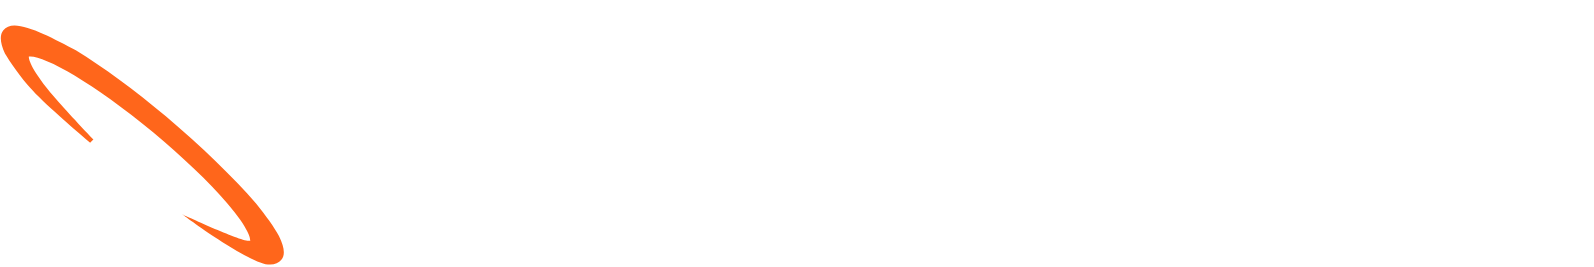 908 Devices logo grand pour les fonds sombres (PNG transparent)